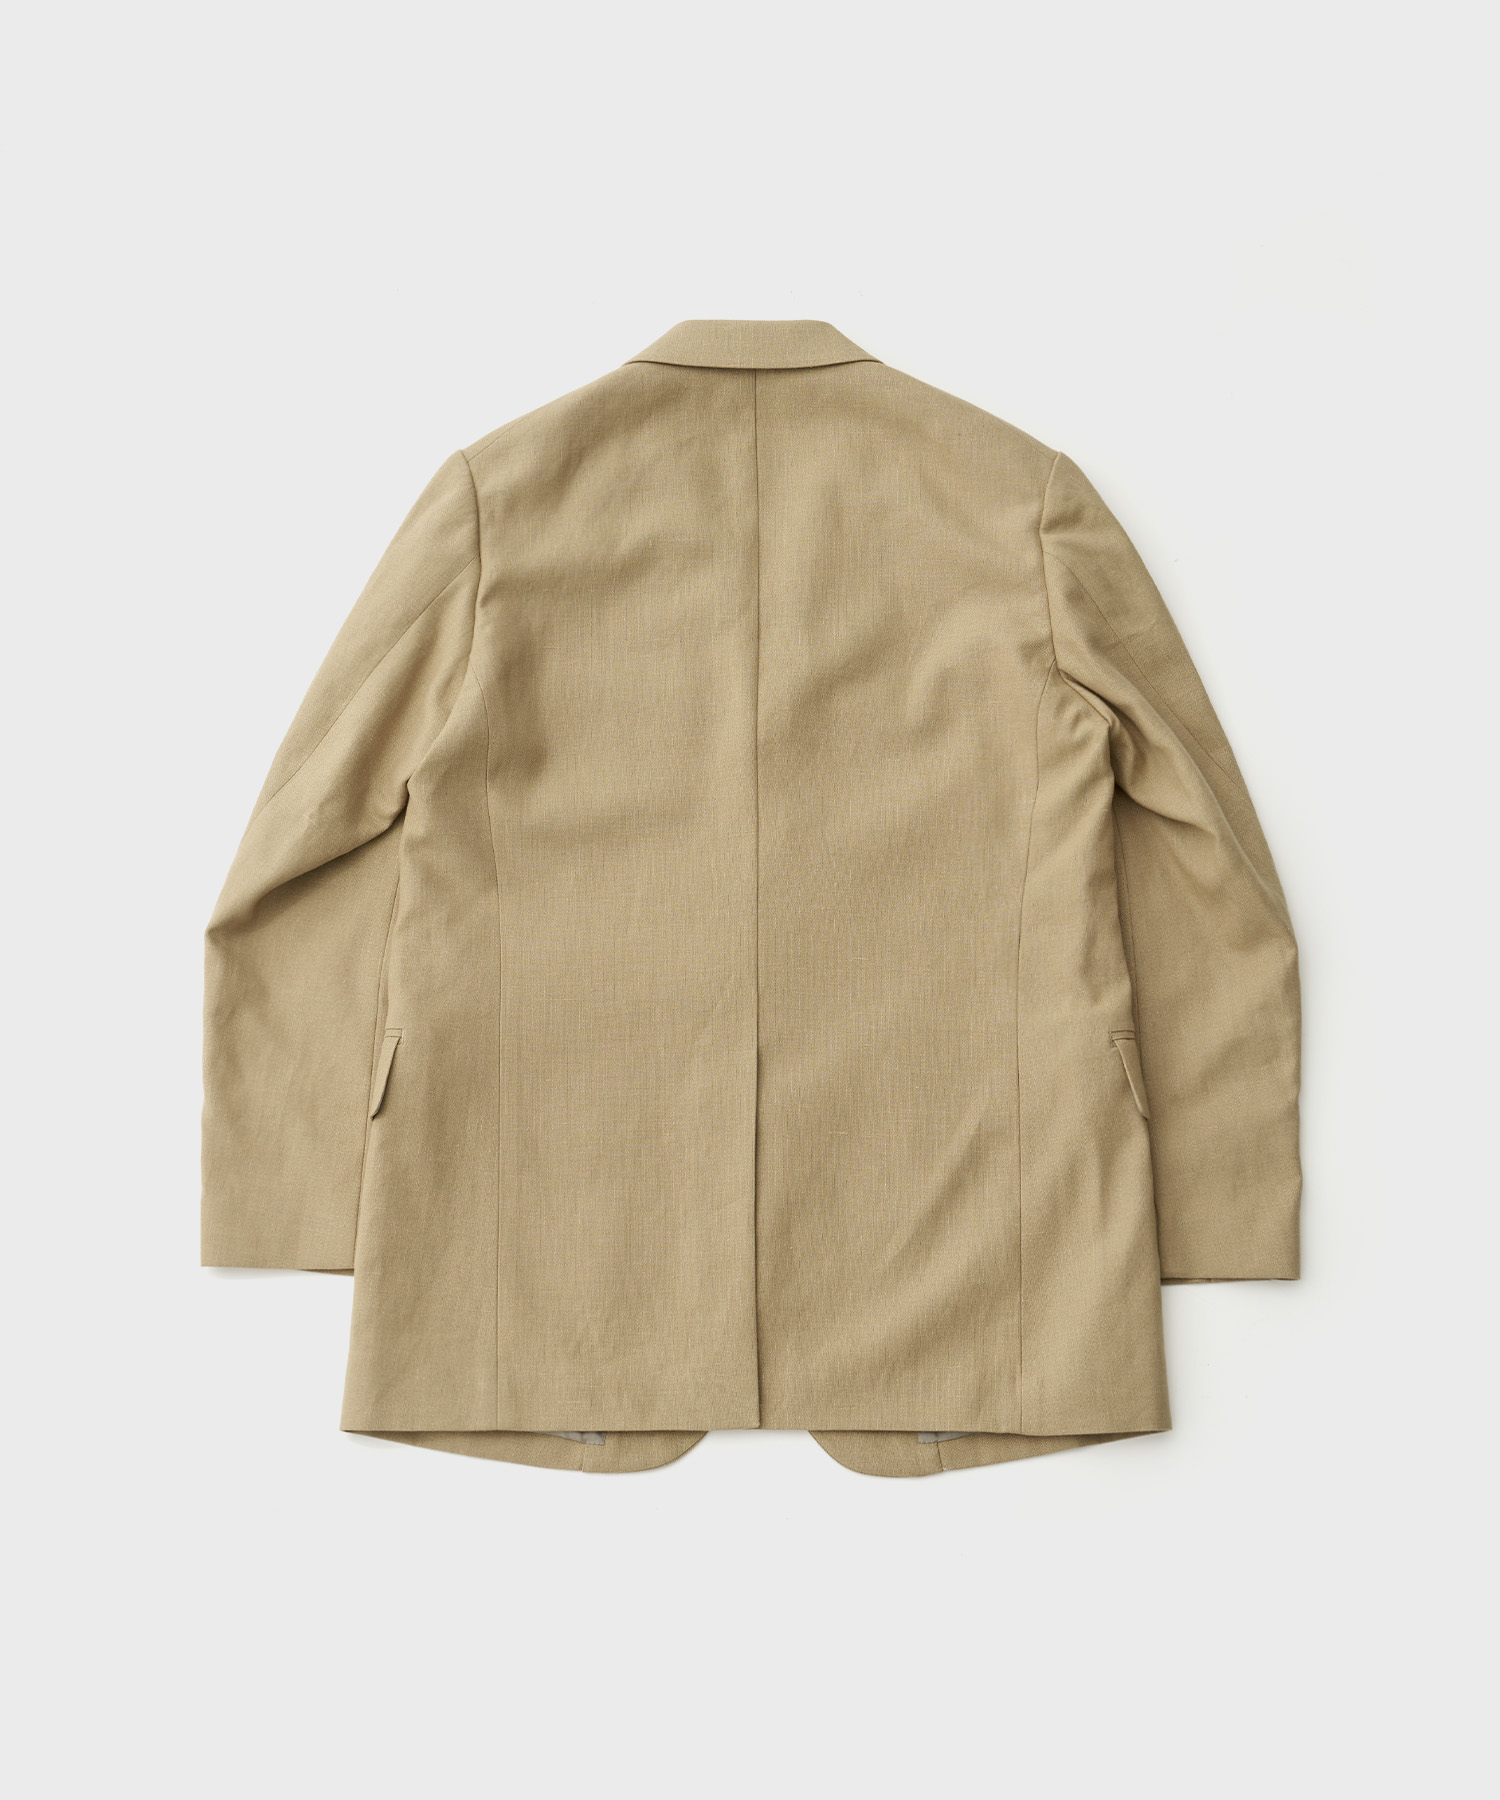 Hemp Organic Cotton Canvas Jacket (Khaki)